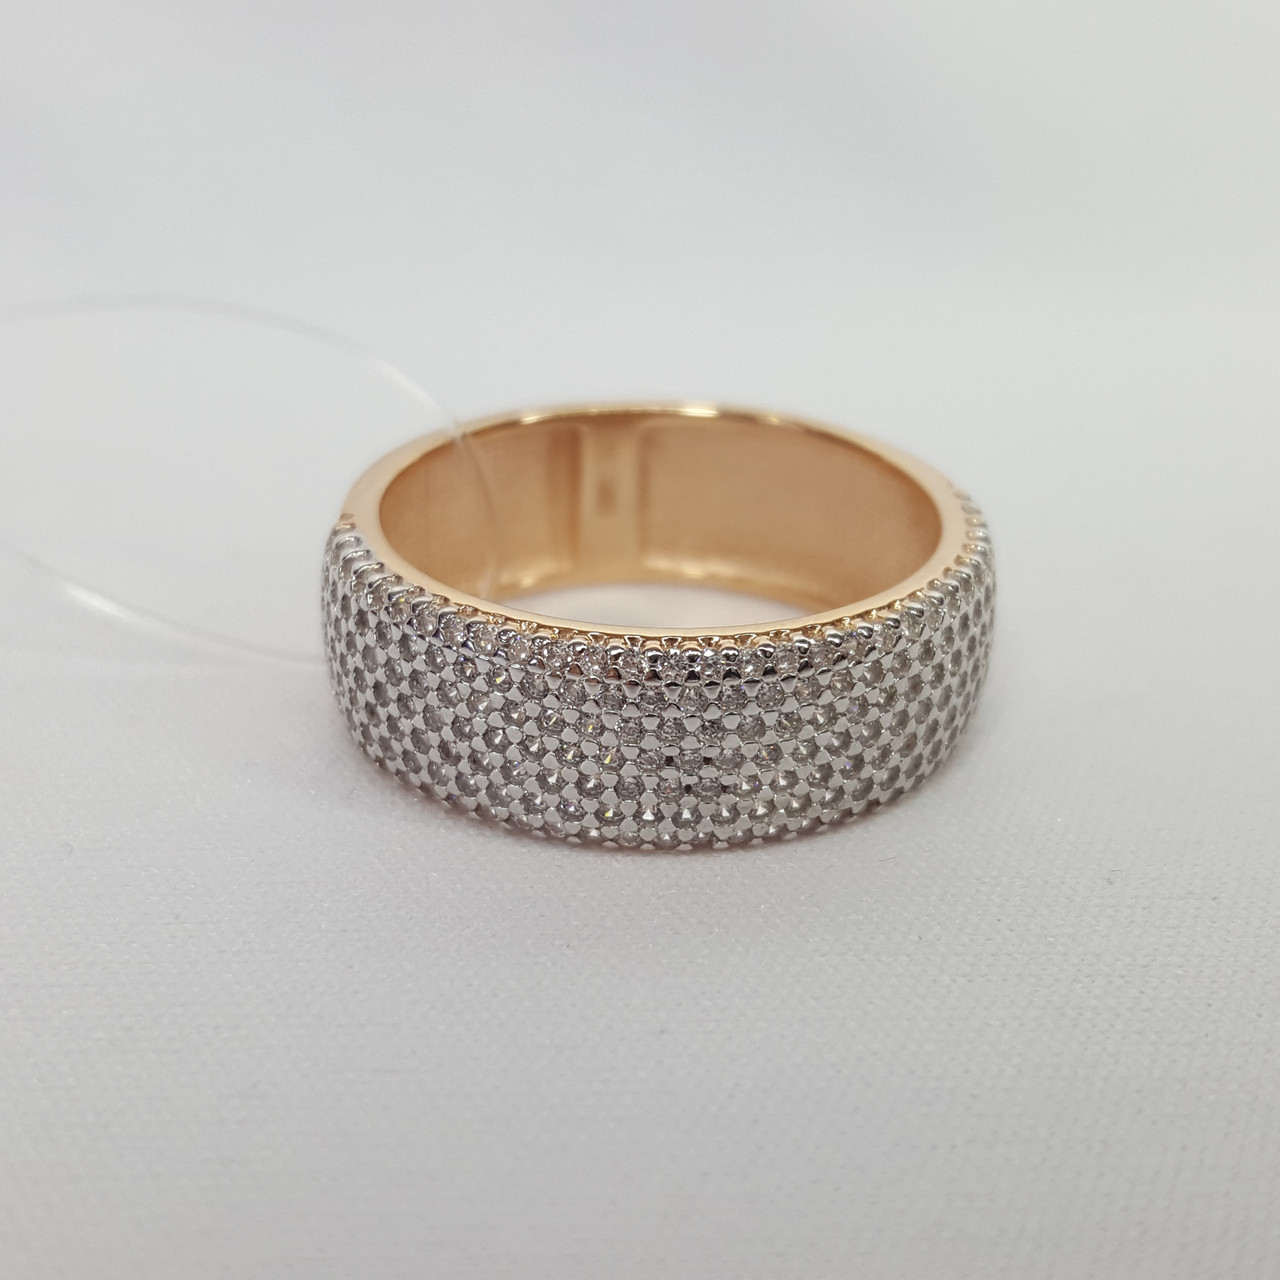 Кольцо из золочёного серебра с фианитами Diamant 93-110-01764-1 позолота коллекц. Transform